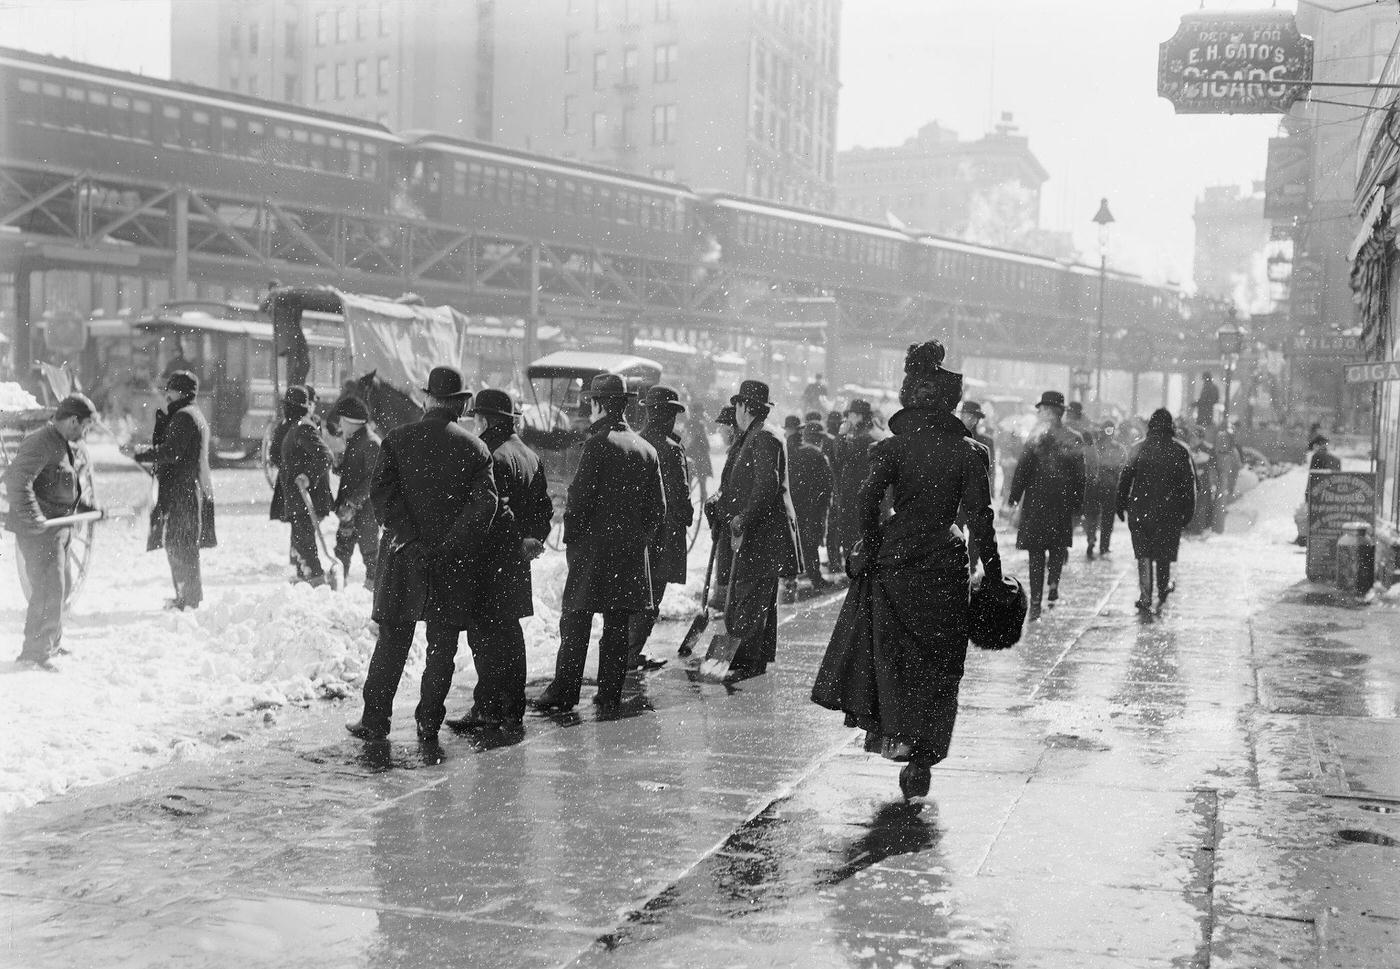 Pedestrians On Street During Blizzard, 1899